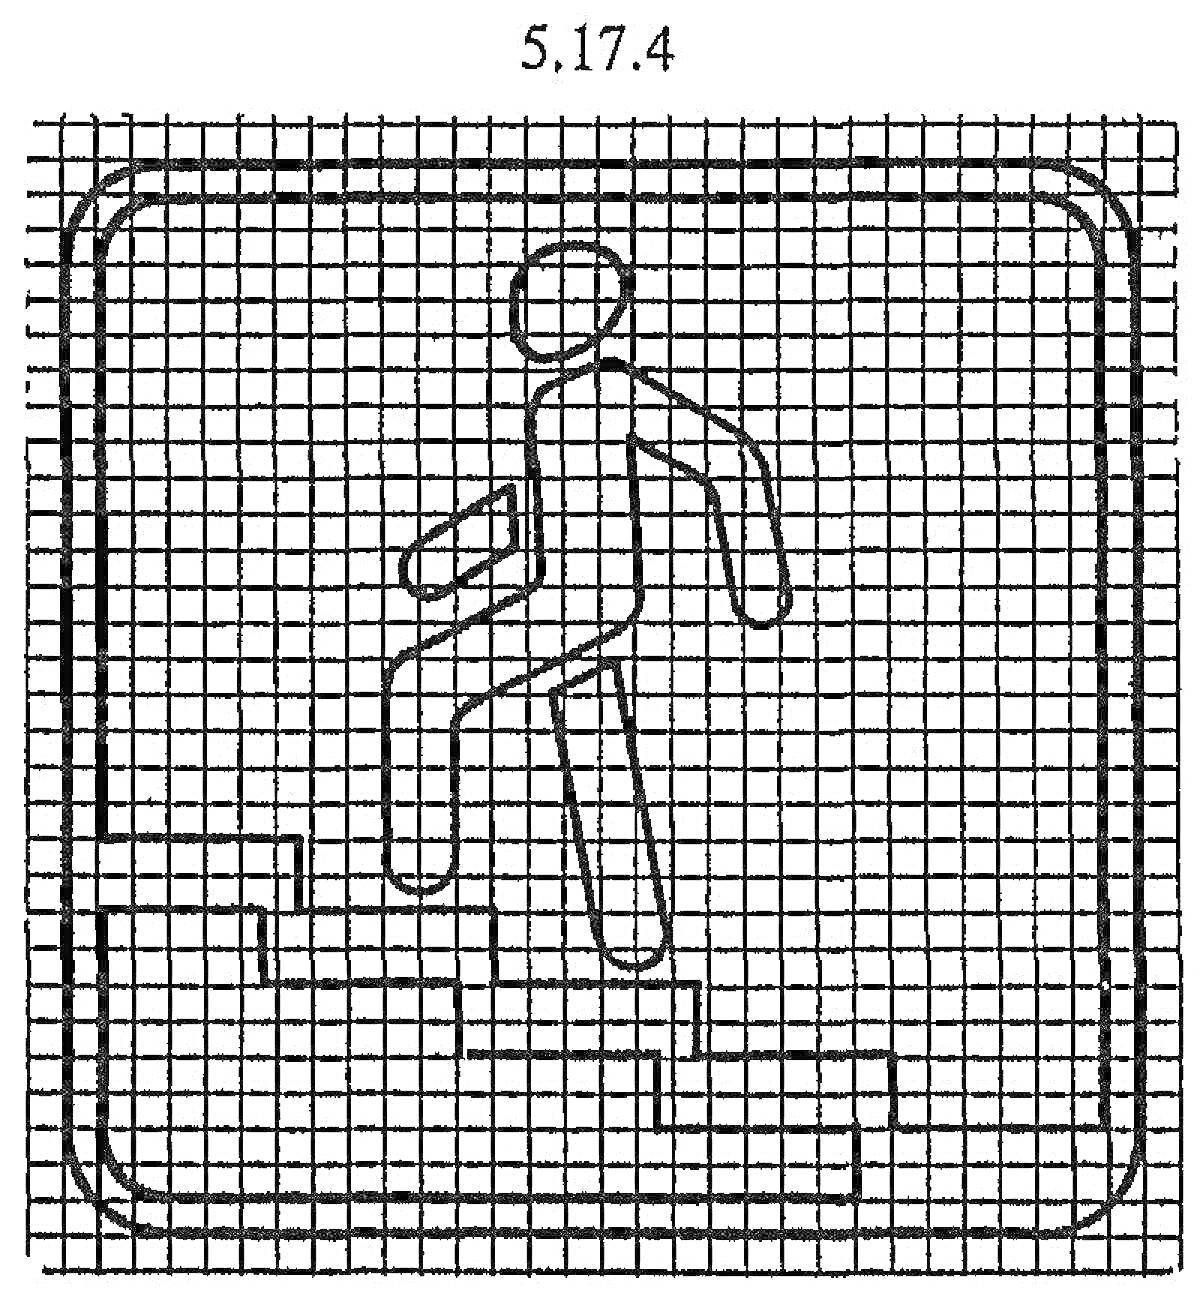 Знак подземного пешеходного перехода с фигурой человека на лестнице в квадратной рамке с закруглёнными углами и сетчатым фоном